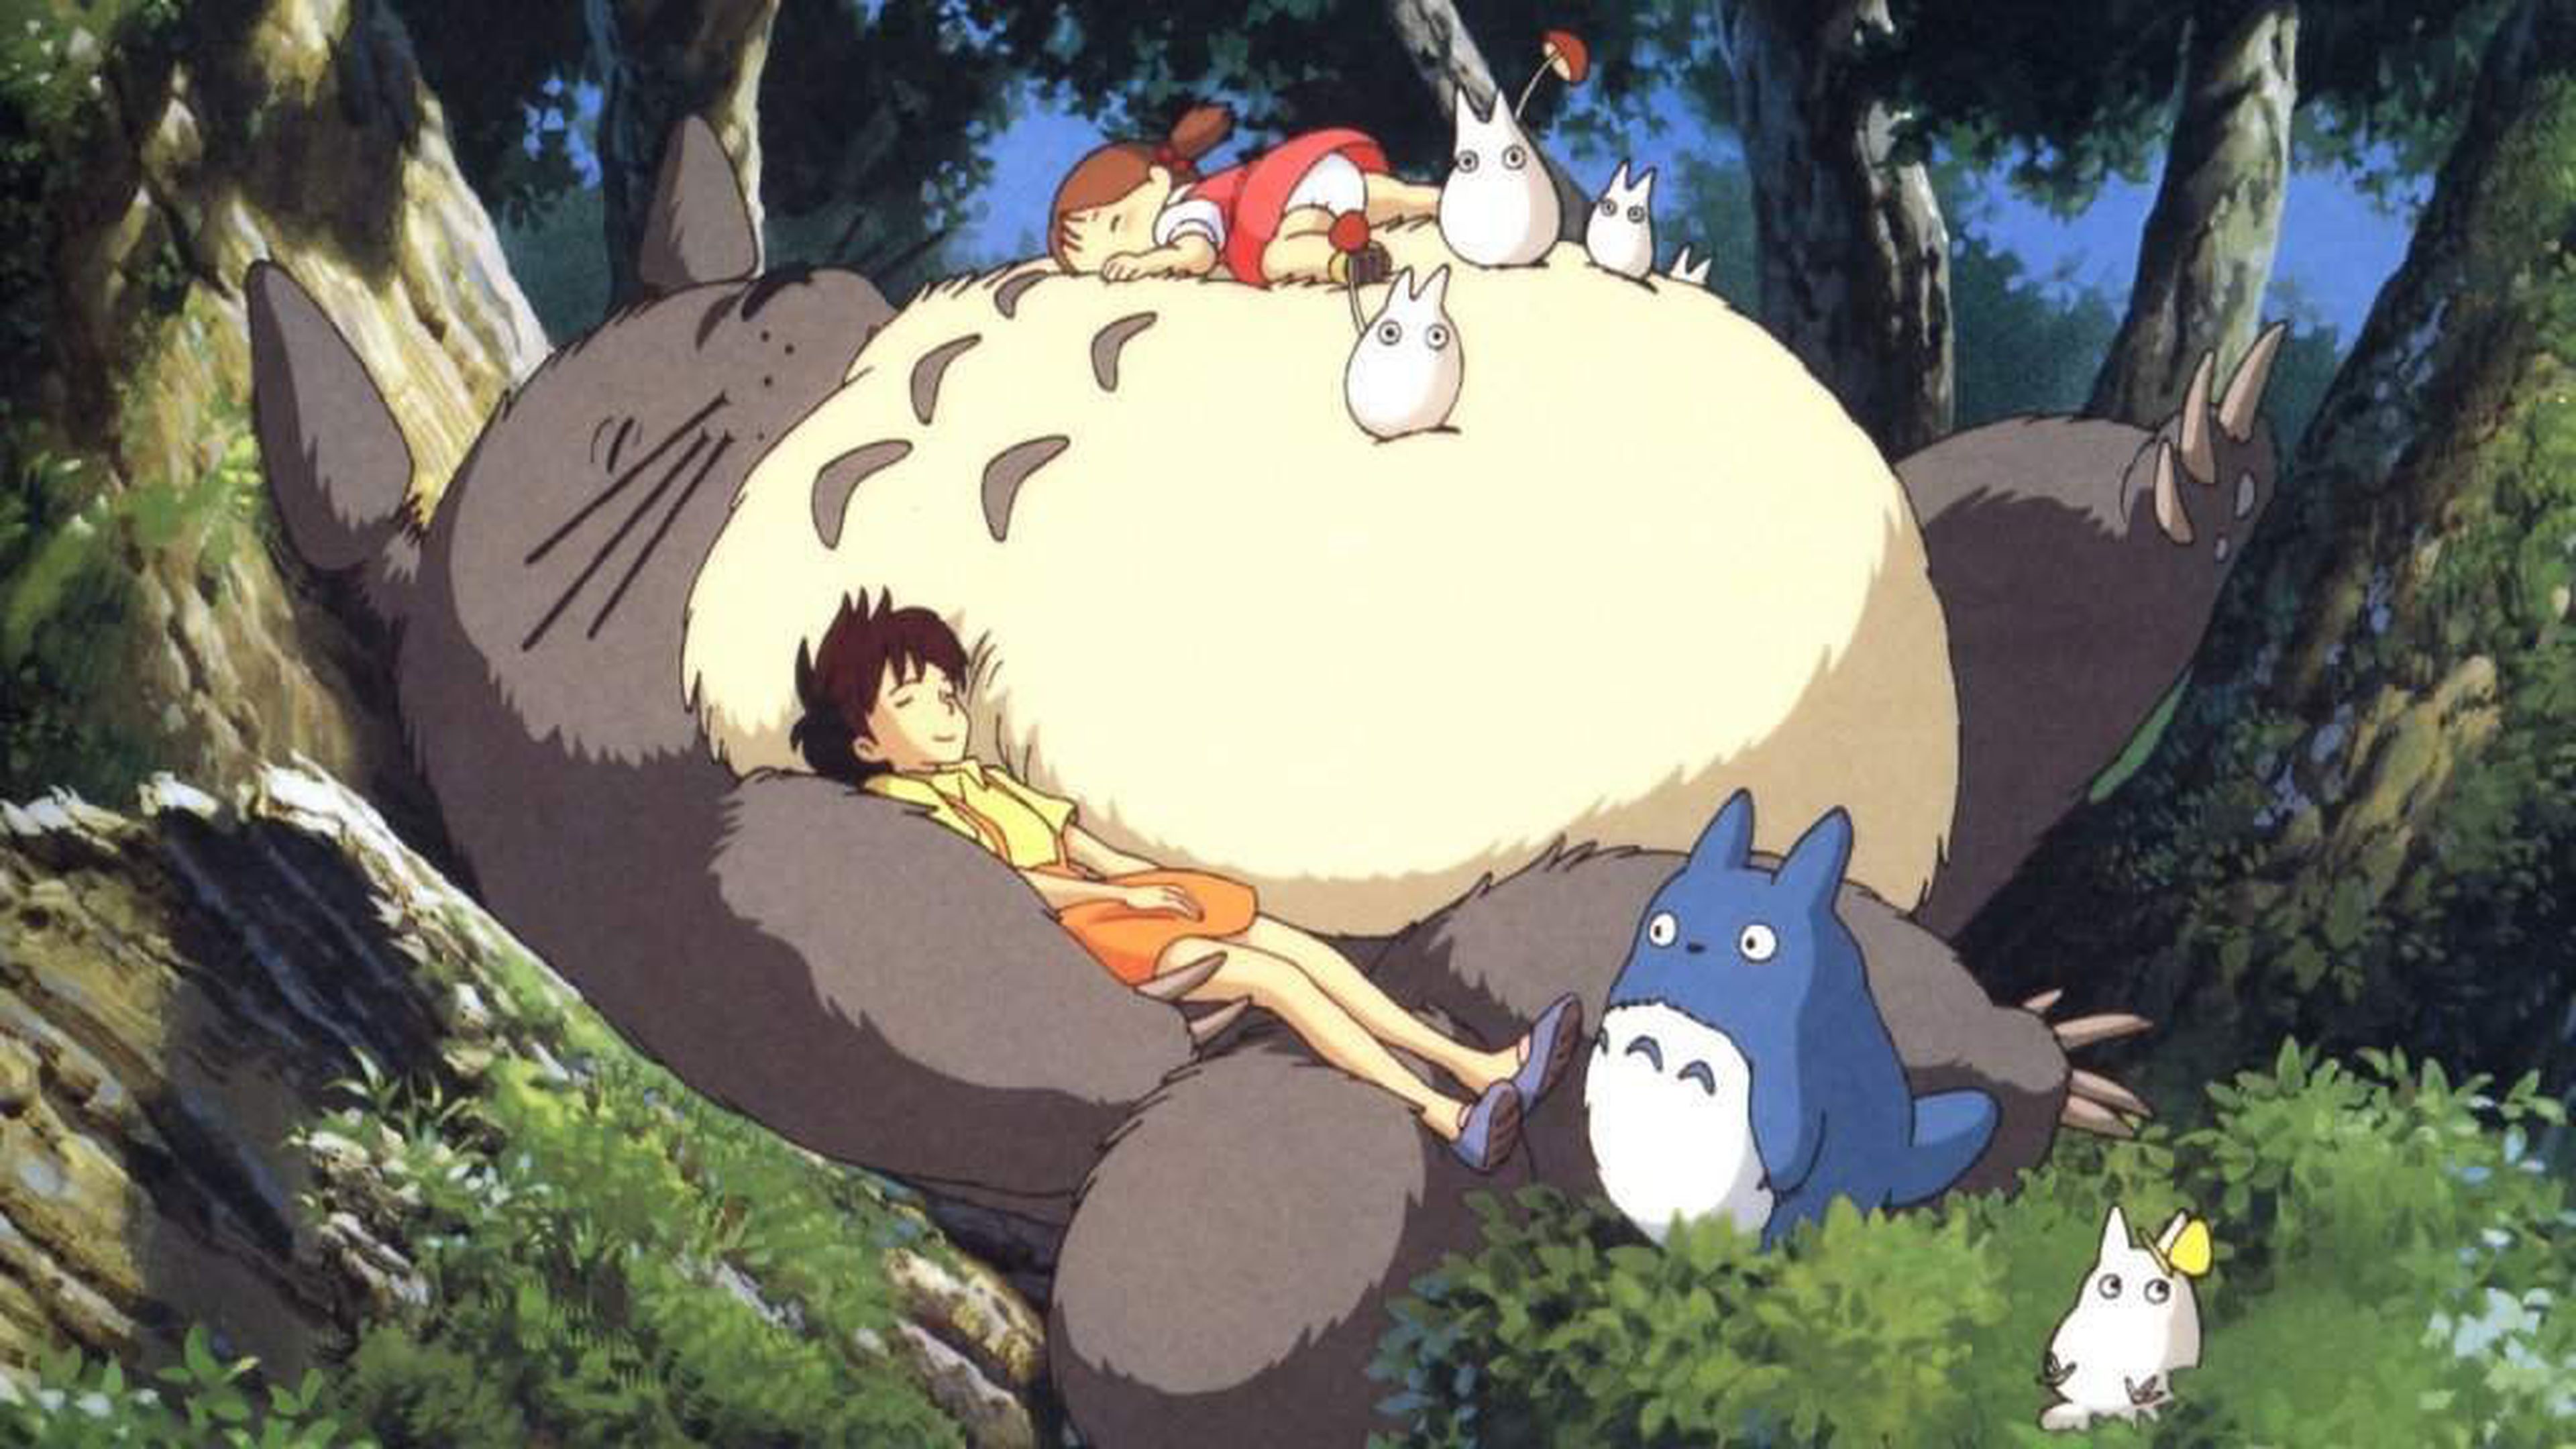 El Studio Ghibli abrirá un parque temático en Japón | Computer Hoy